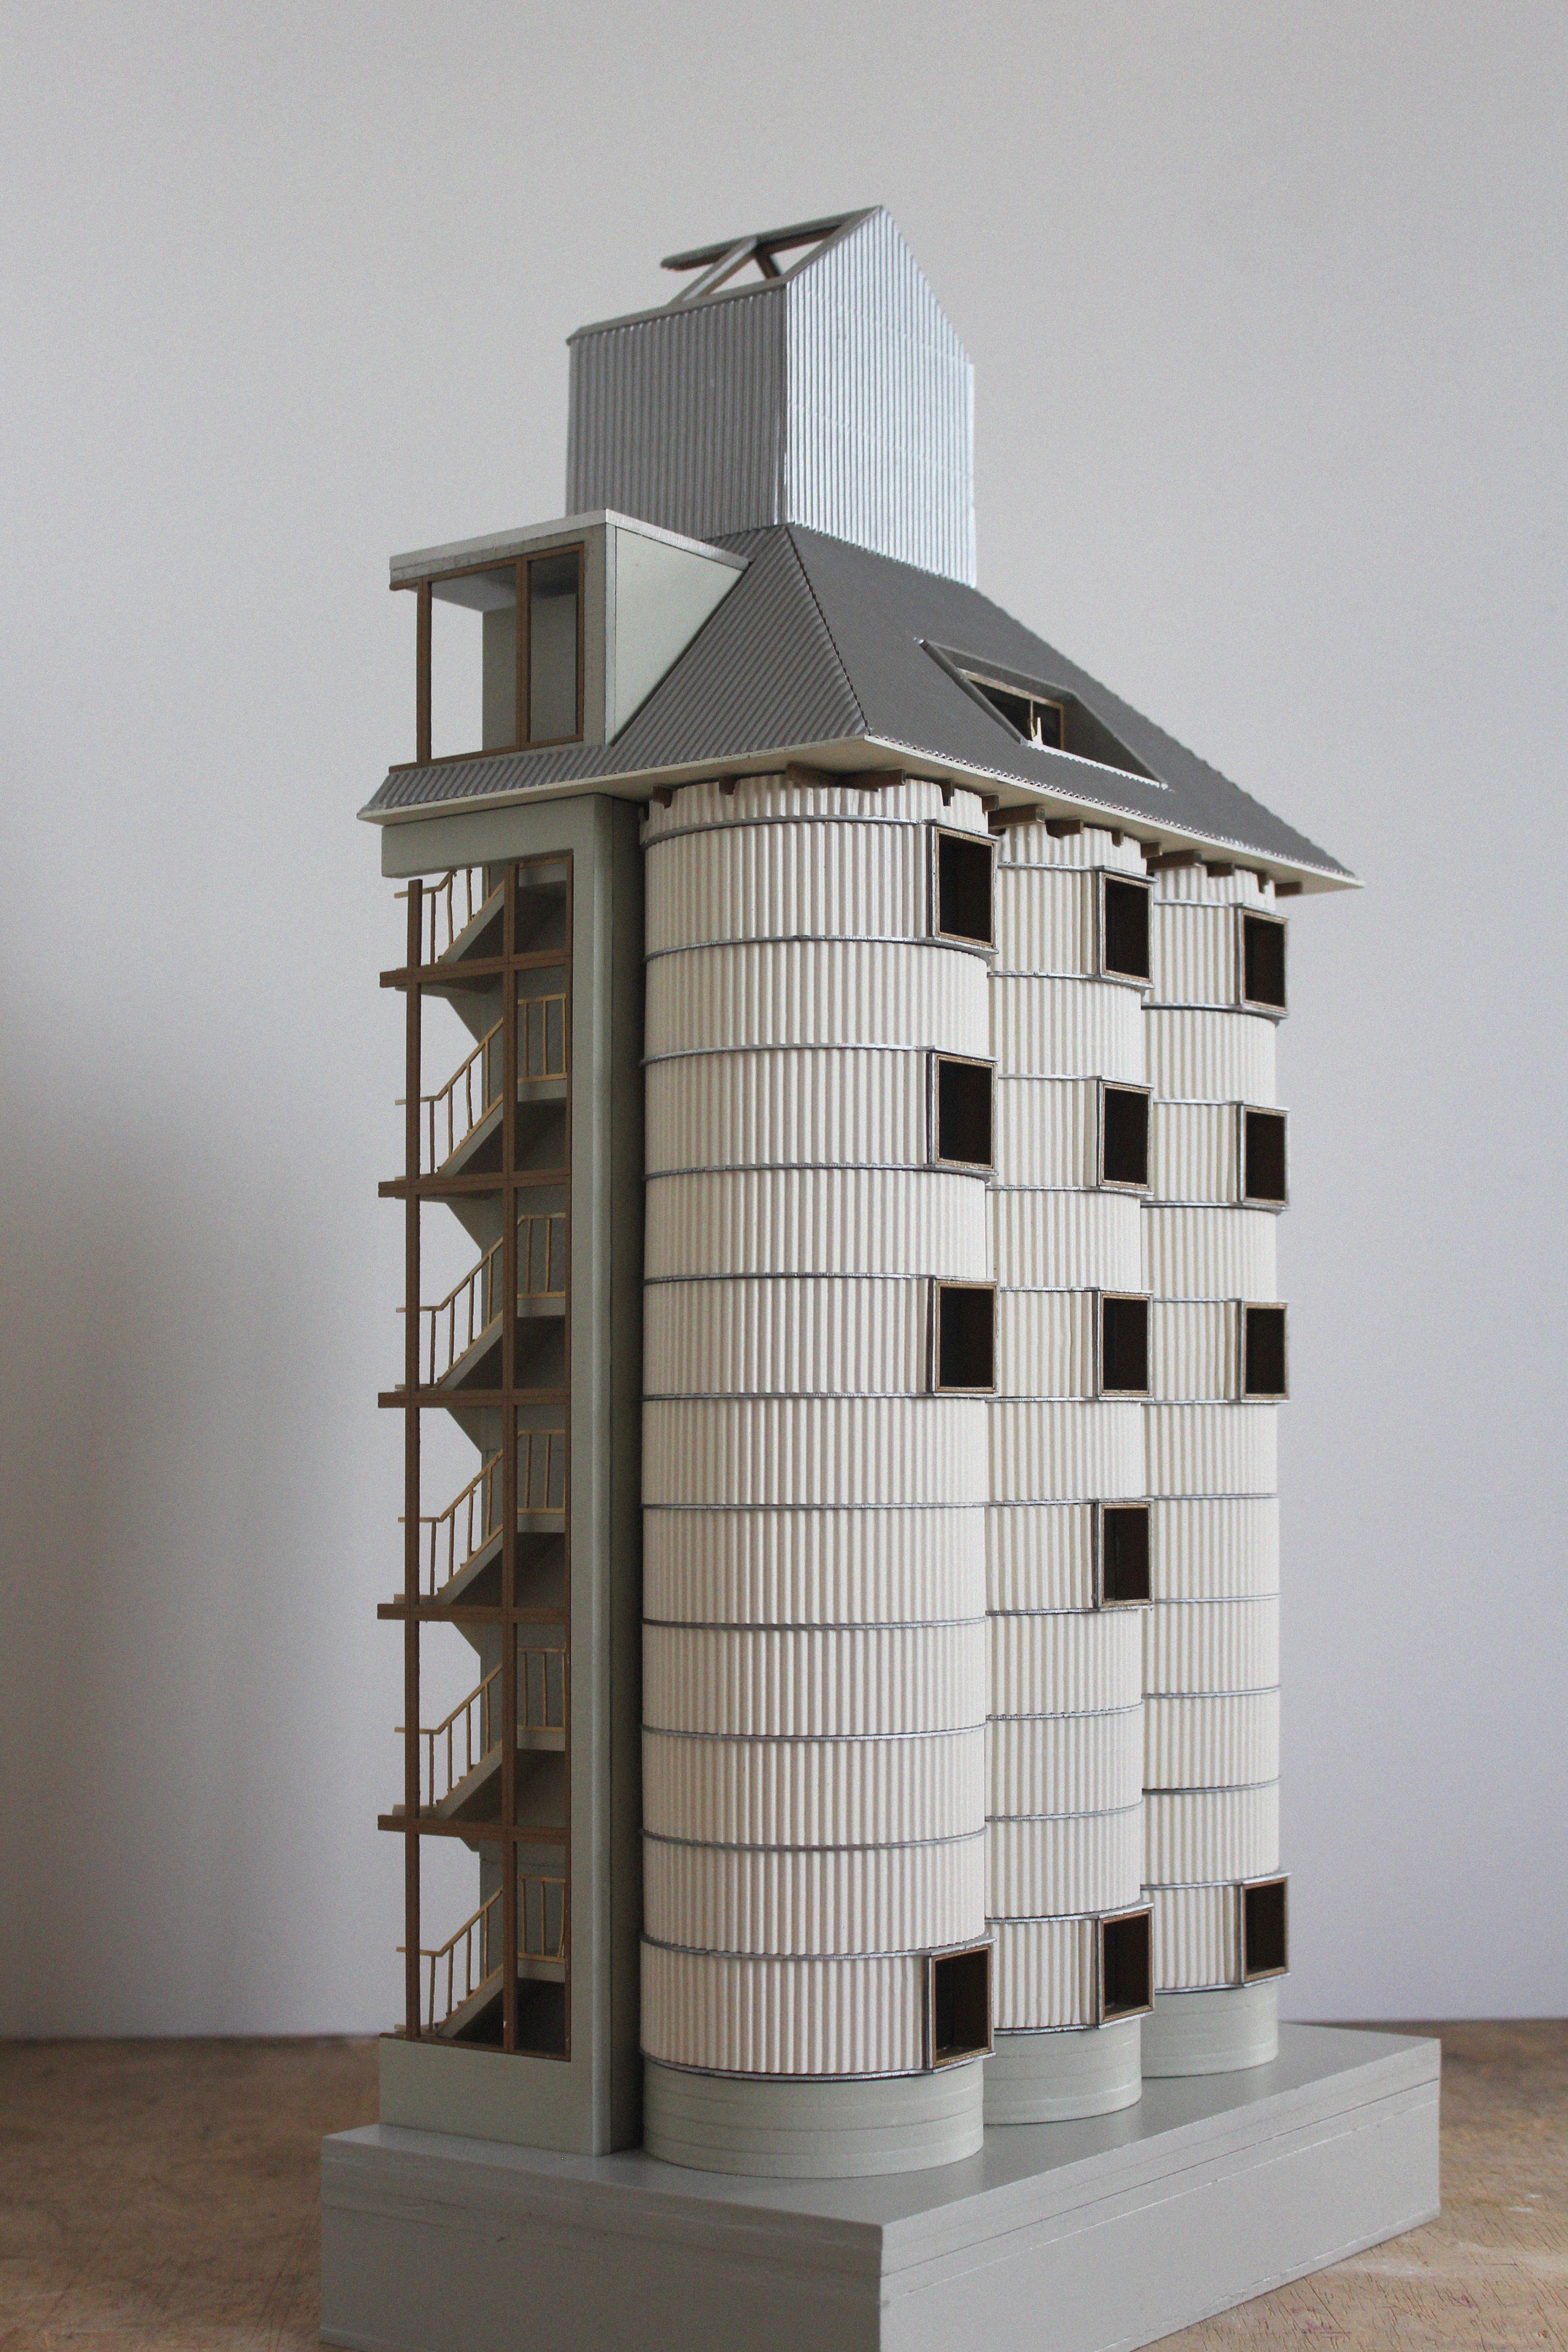 Jakob Jakobsen silo model 1:50 facade